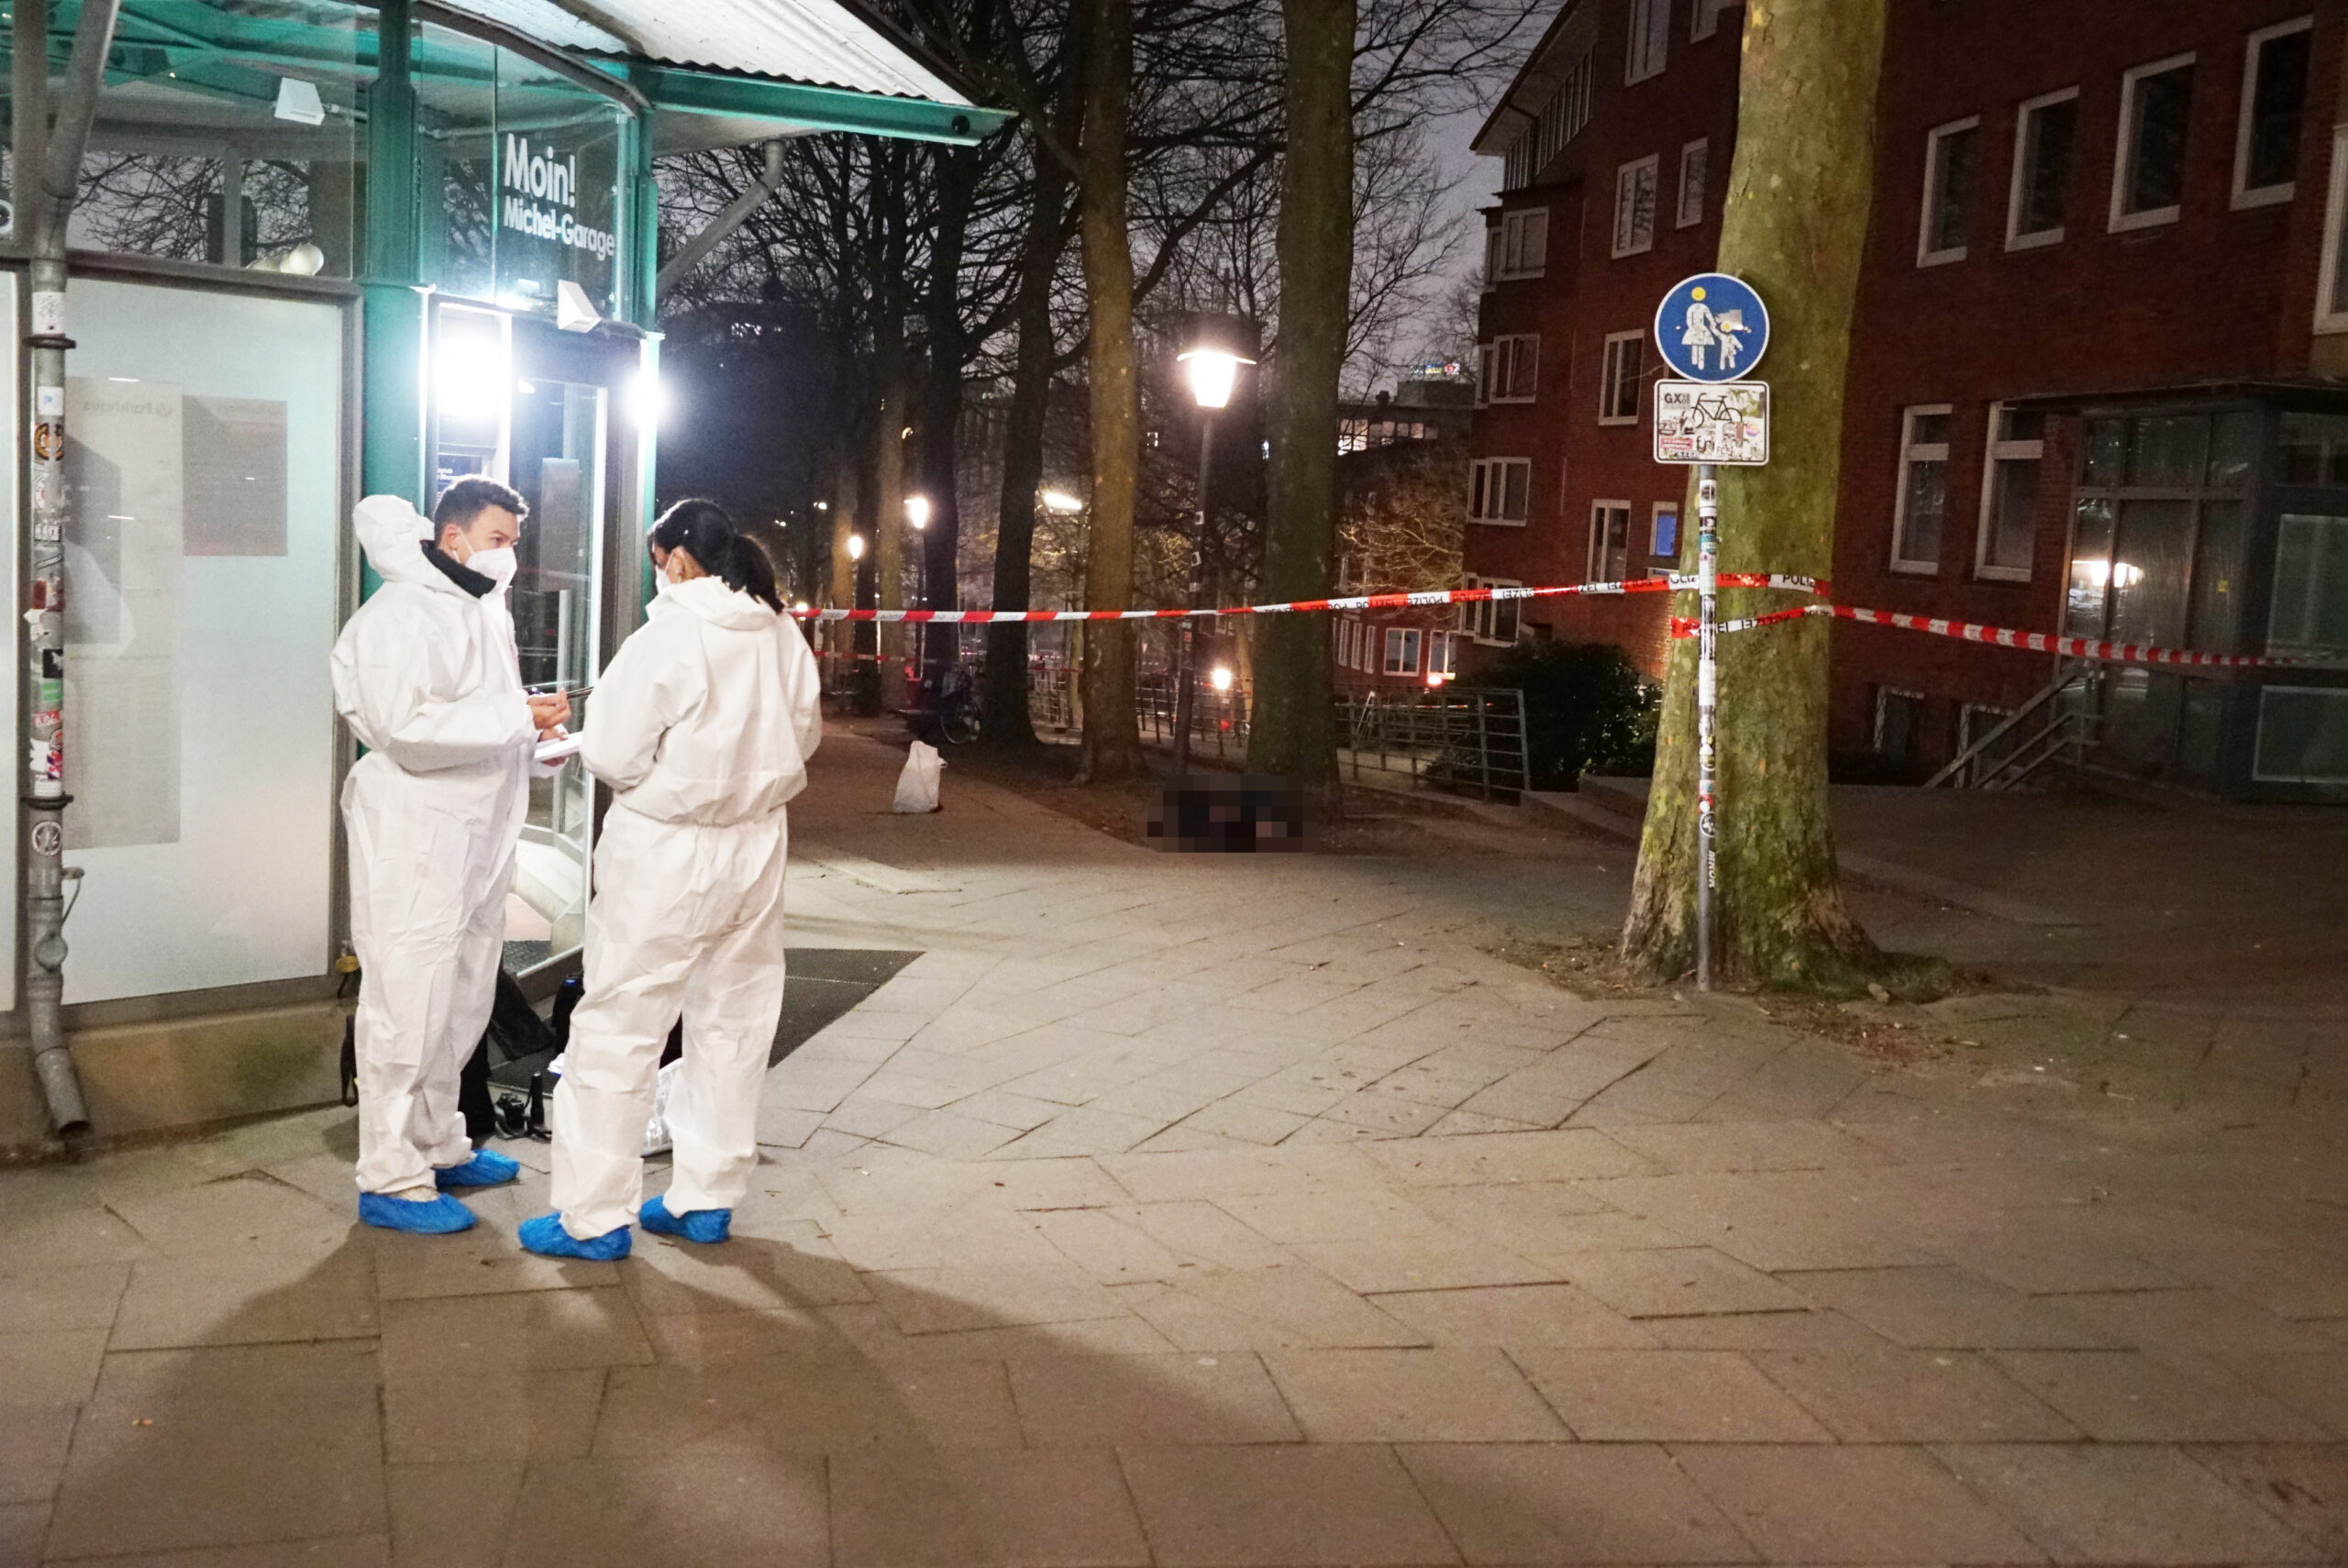 Der Tatort in der Neustadt: An der Michel-Wiese wurde die Leiche eines Mannes gefunden. Die Mordkommission ermittelt.